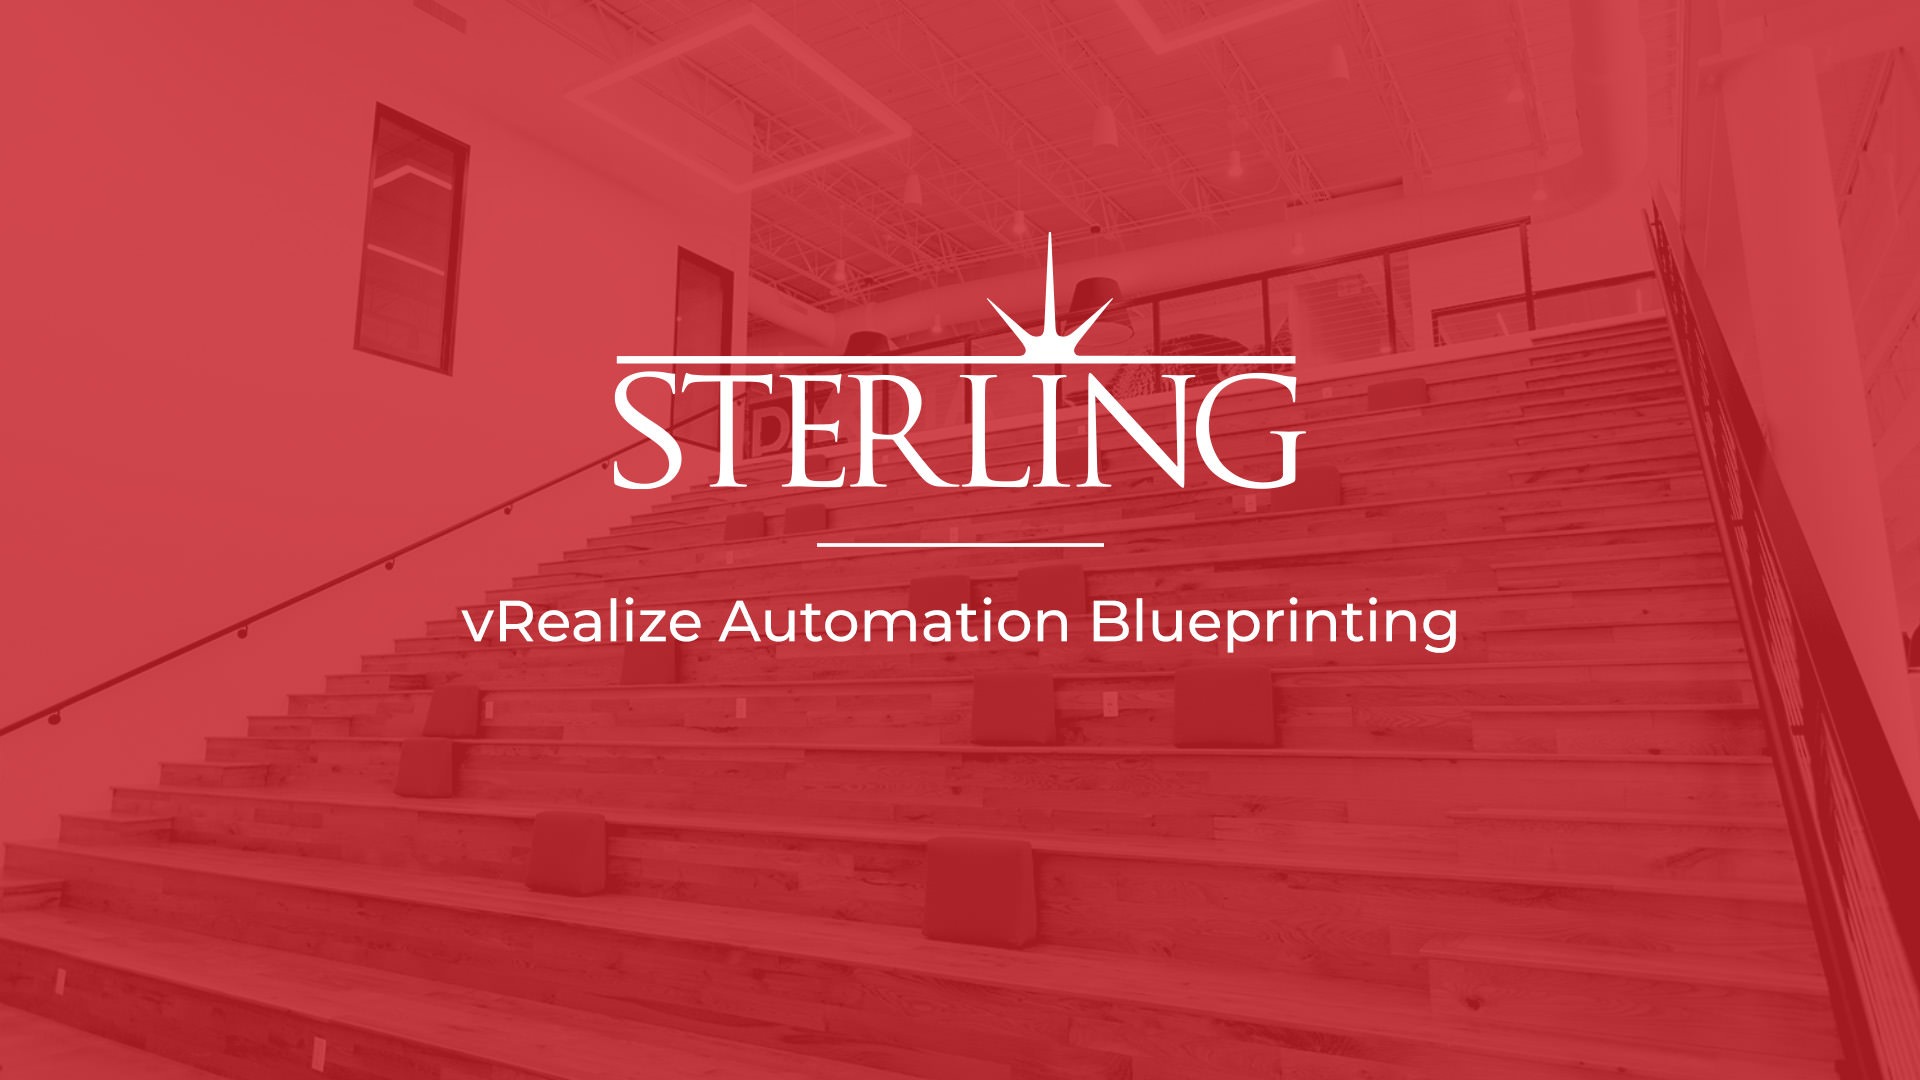 vRealize Automation Blueprinting